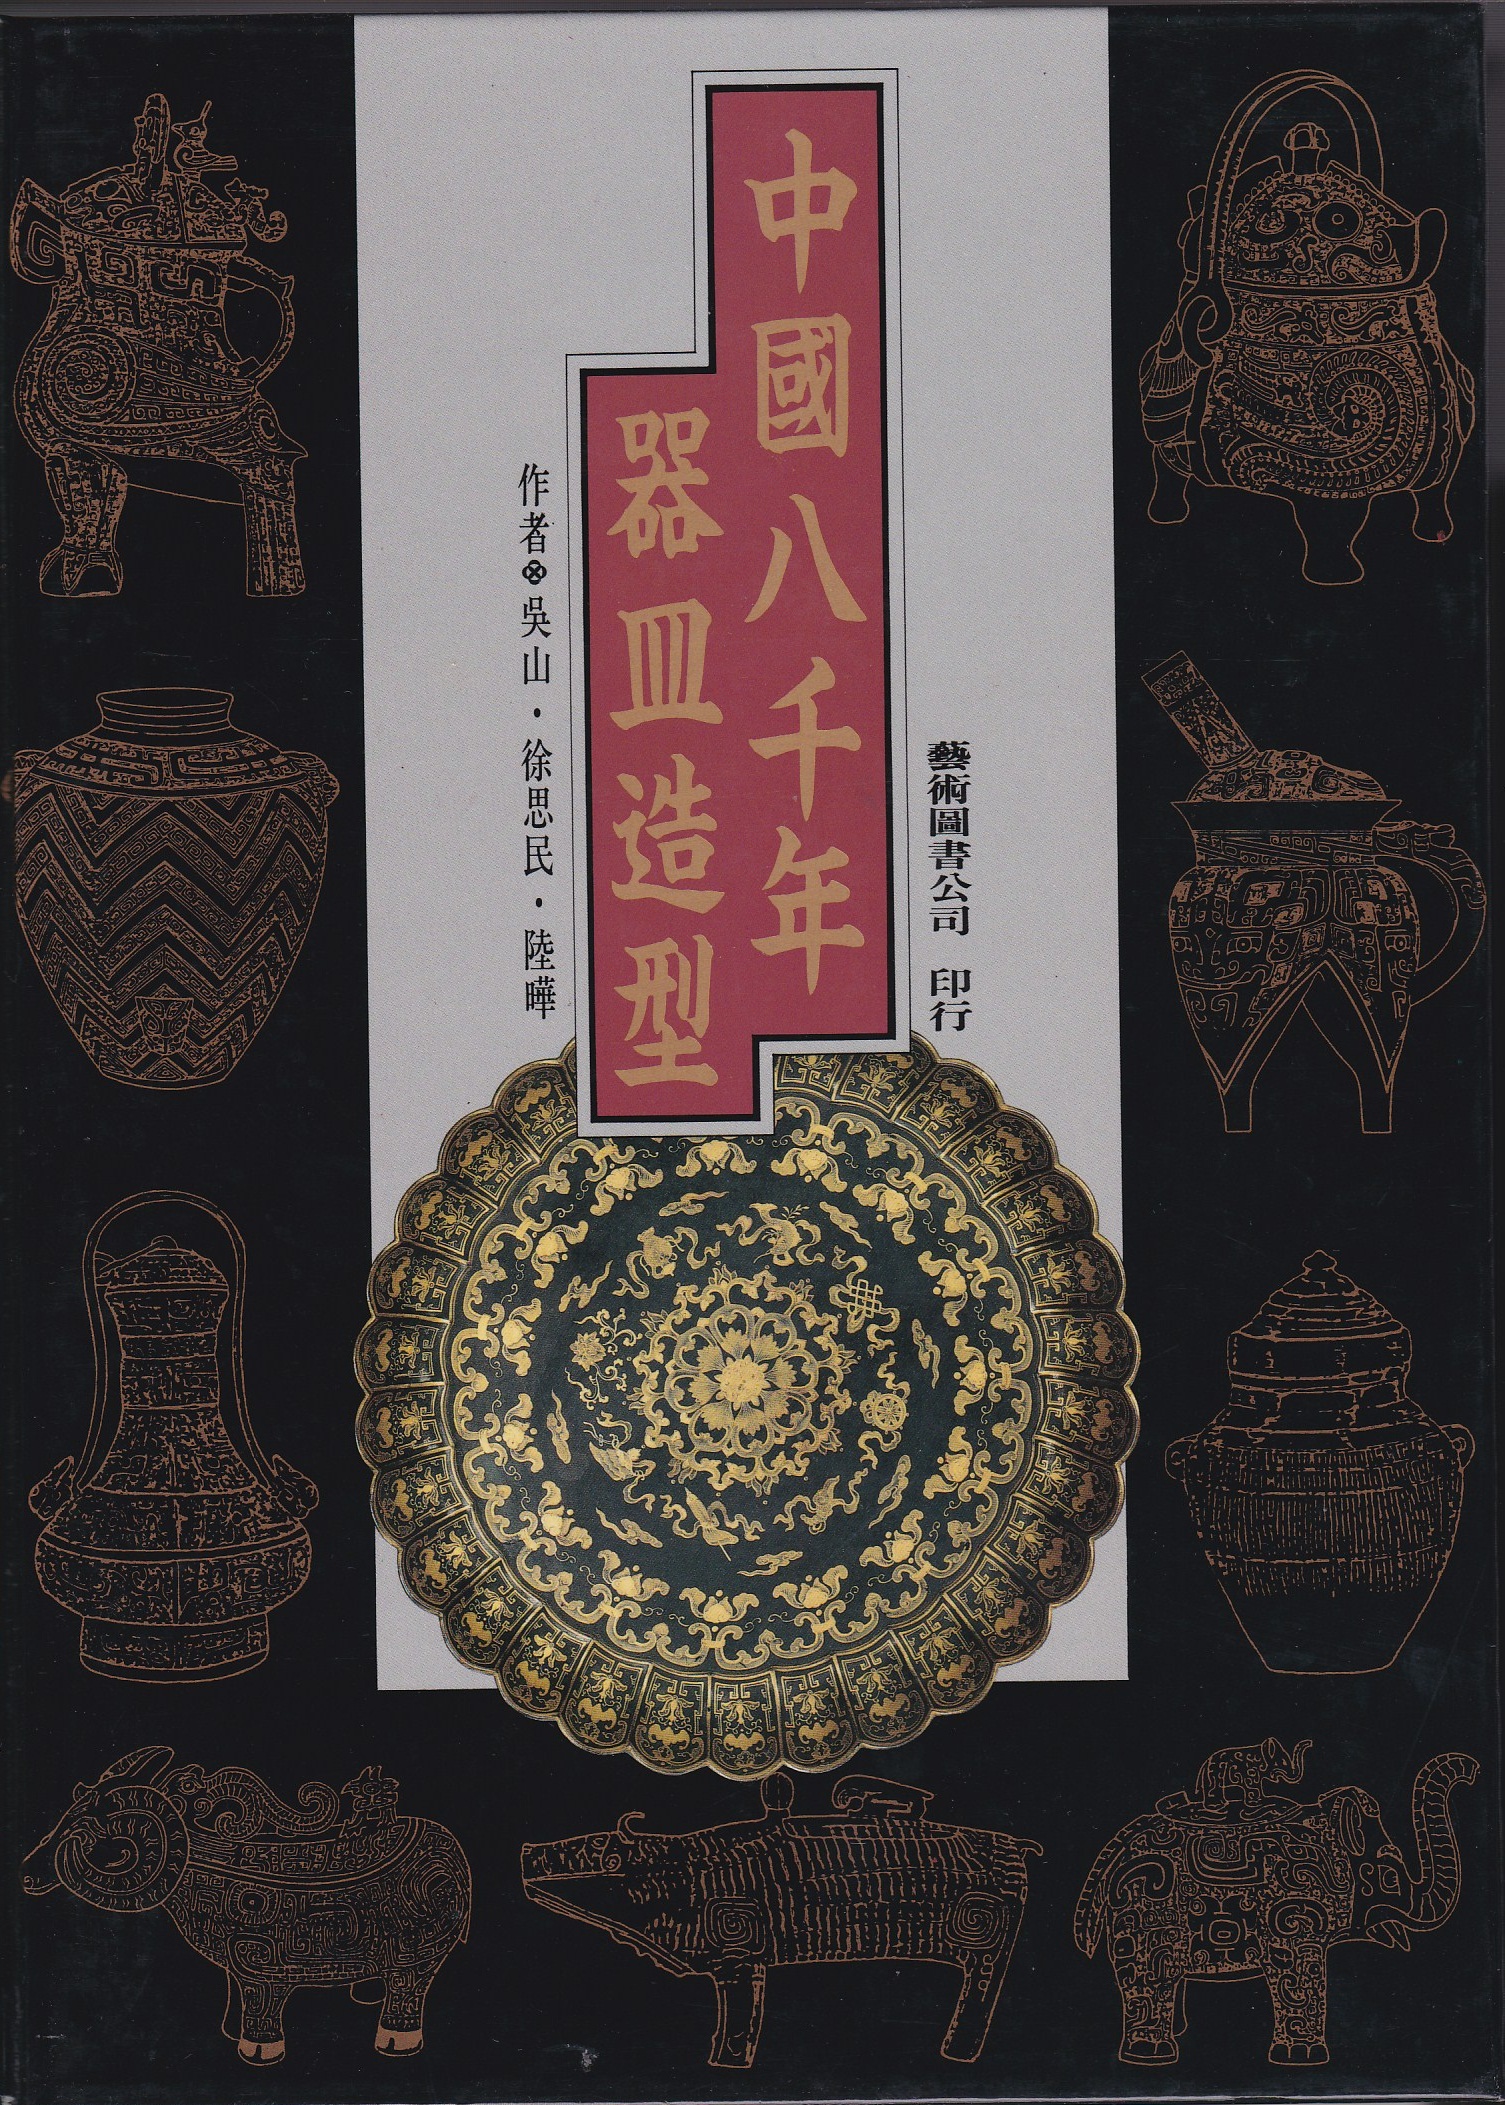 中國八千年器皿造型| 誠品線上